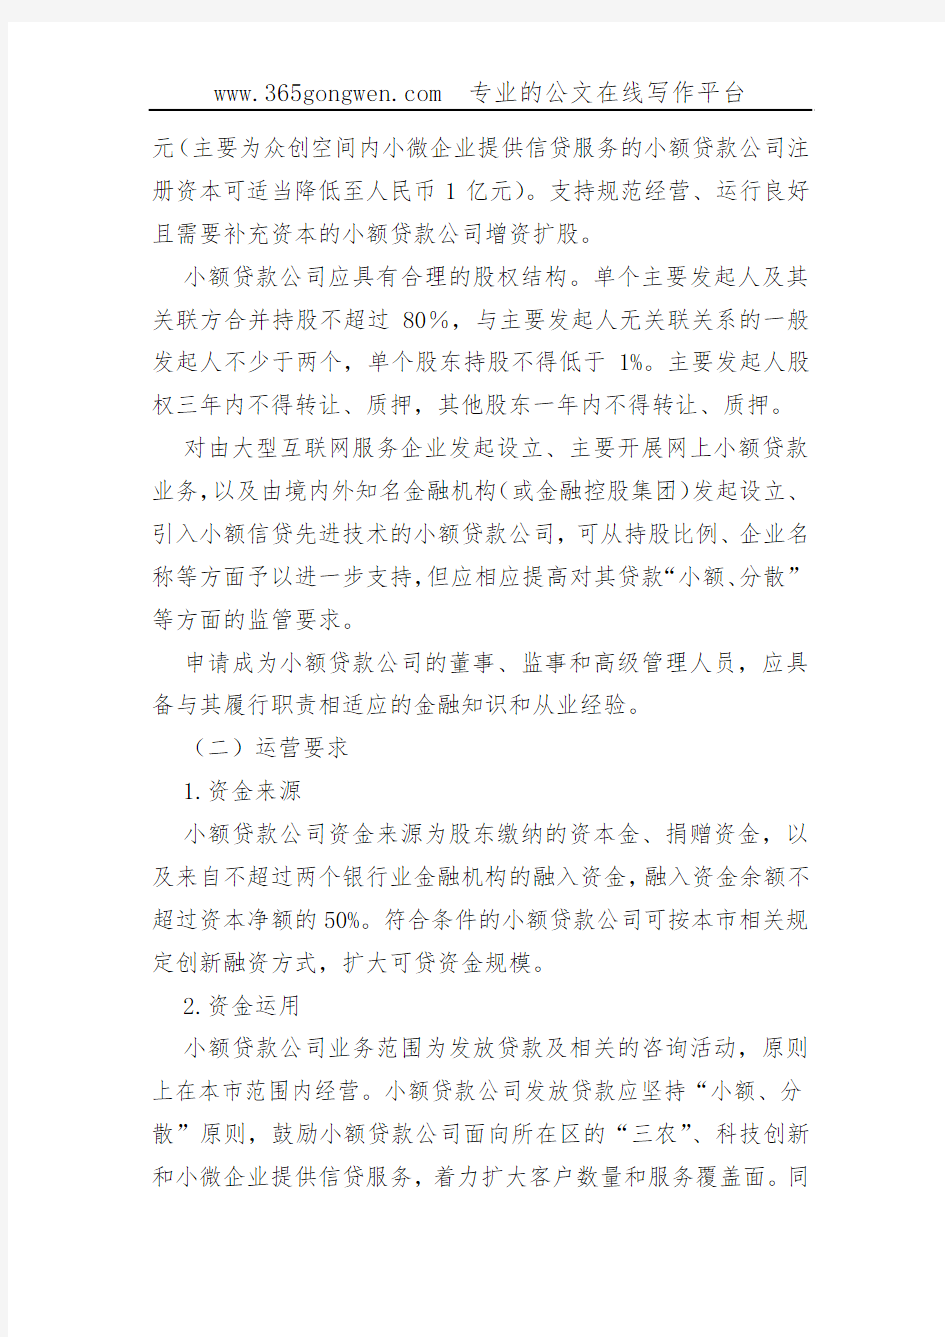 【银行办法】上海市小额贷款公司监管办法